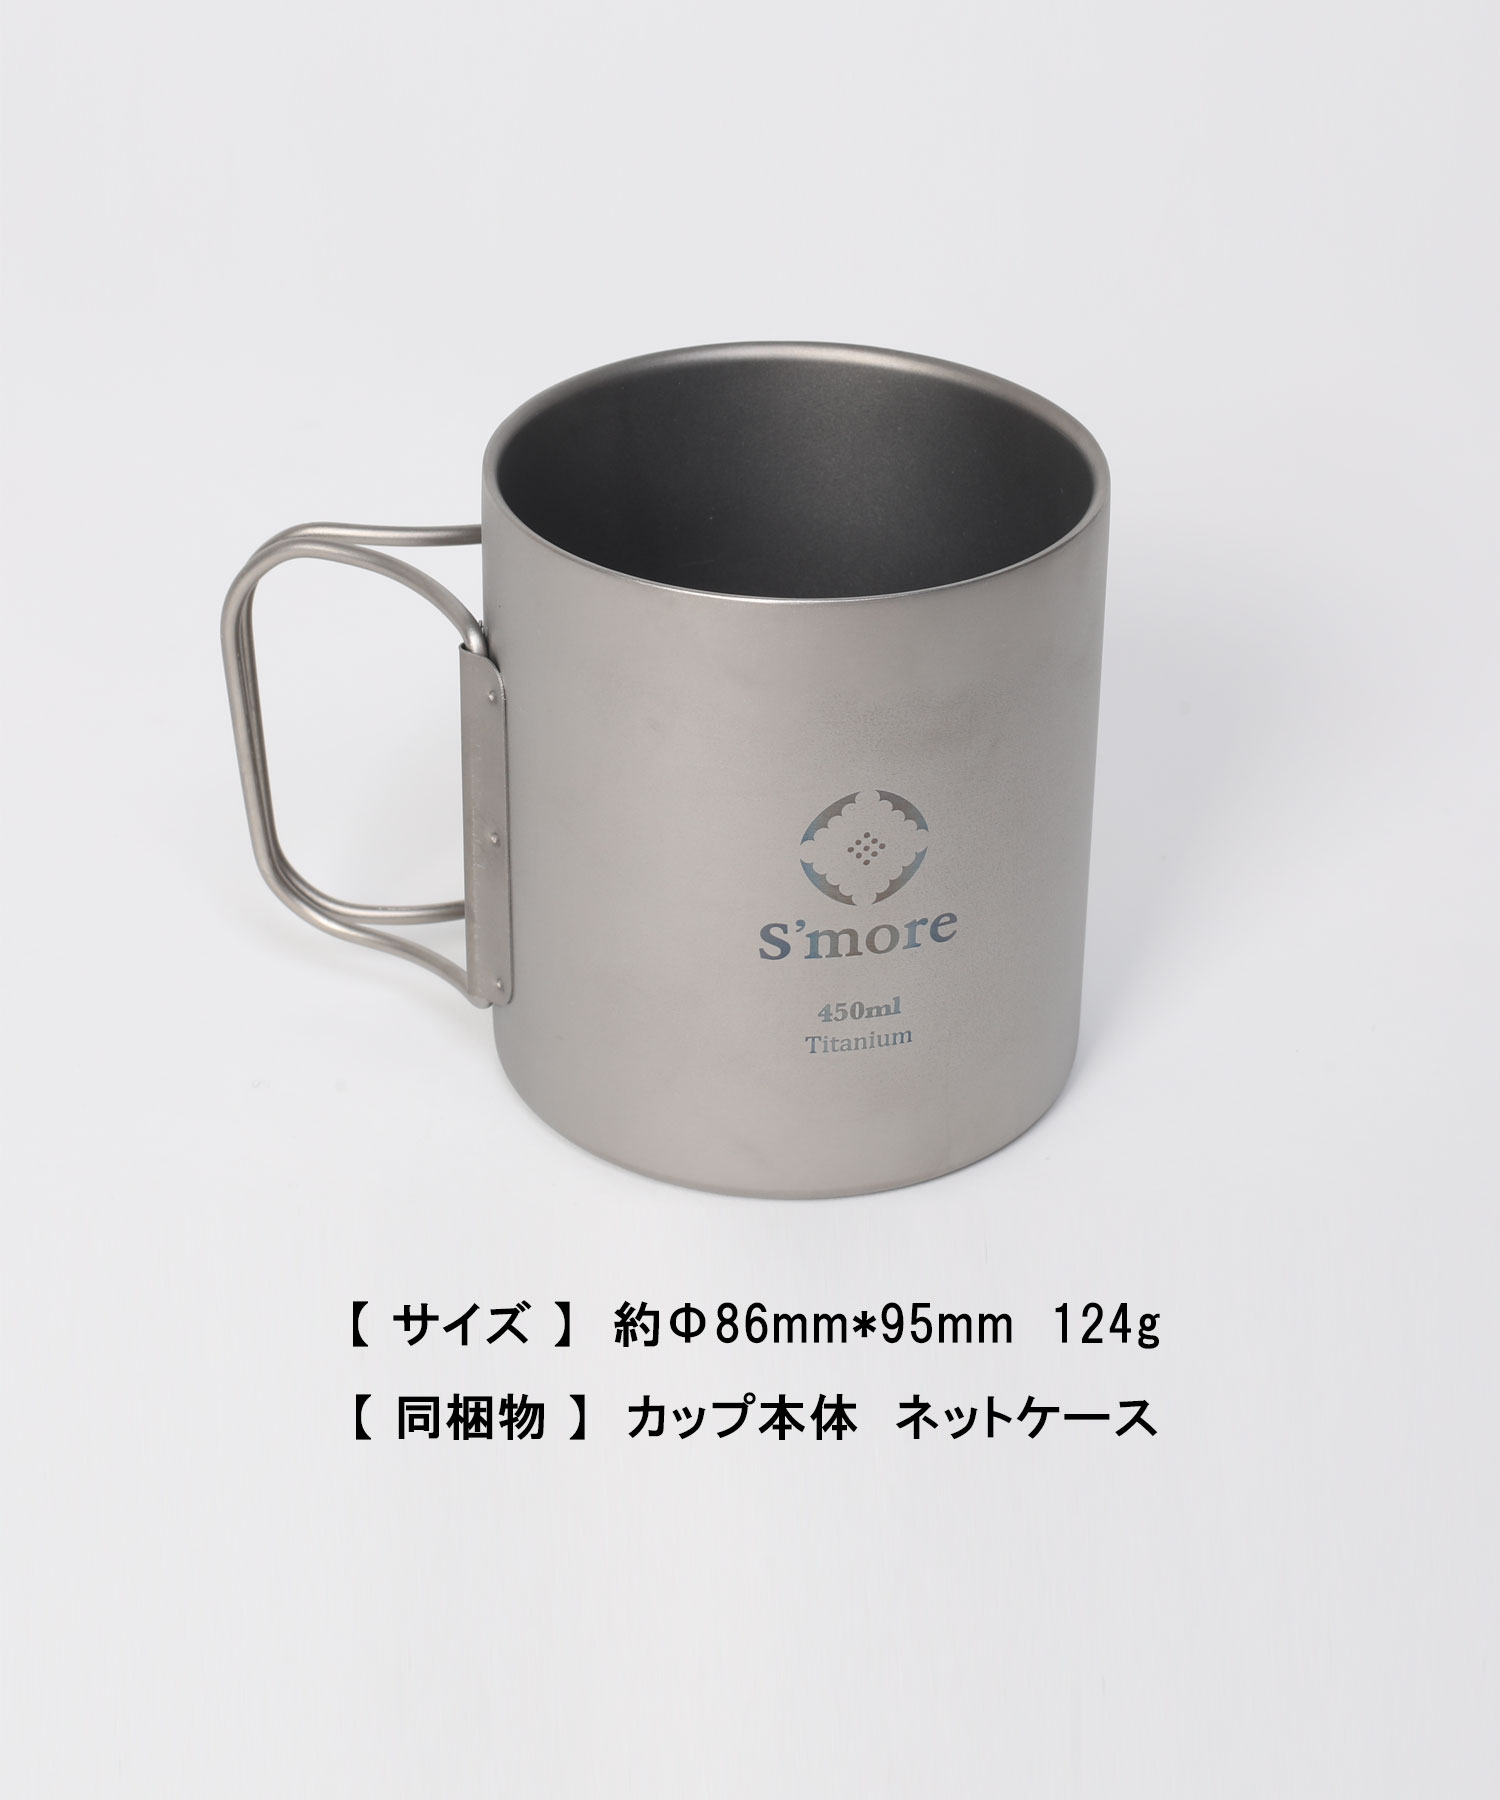 スモア Titanium Double Mug 450